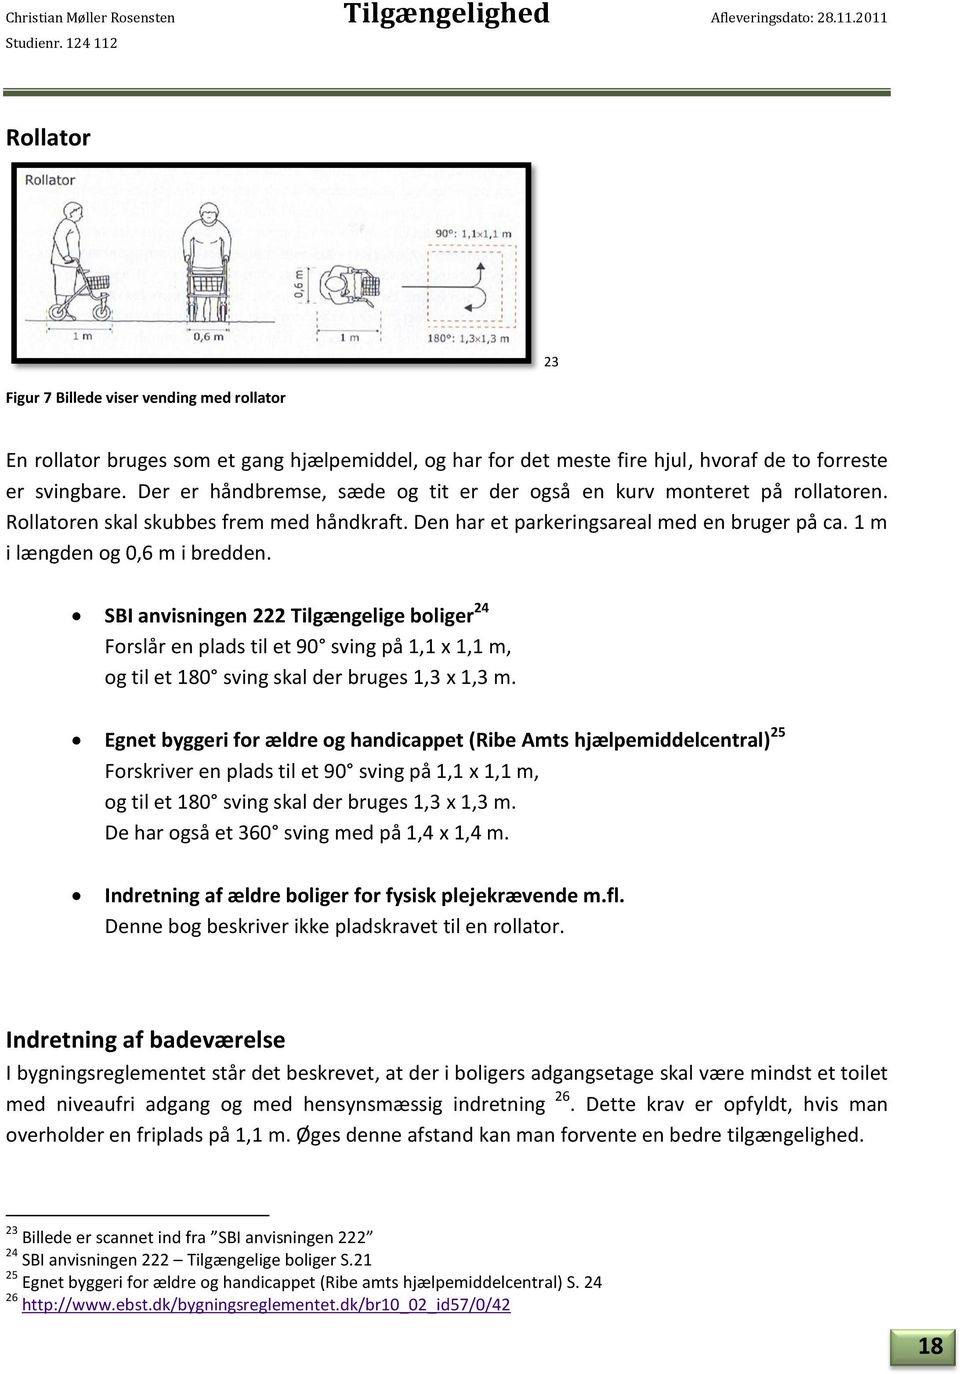 Tilgængelighed. Laurits Kristian Kristensen - PDF Free Download